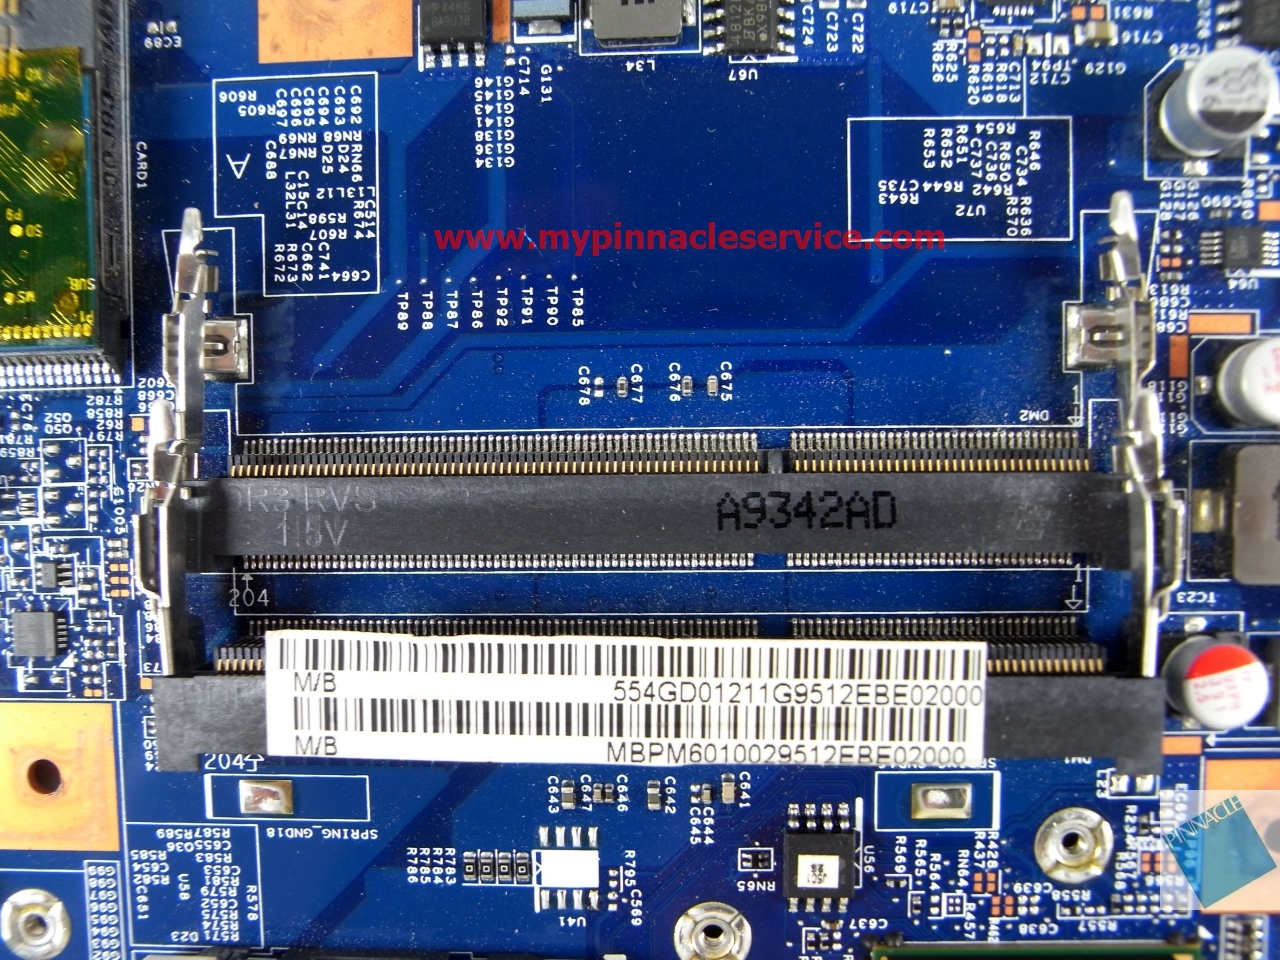 mbpm601002-motherboard-for-acer-aspire-5740-5740g-48.4gd01.01m-jv50-cp-mb-09285-1m-r0011372.jpg